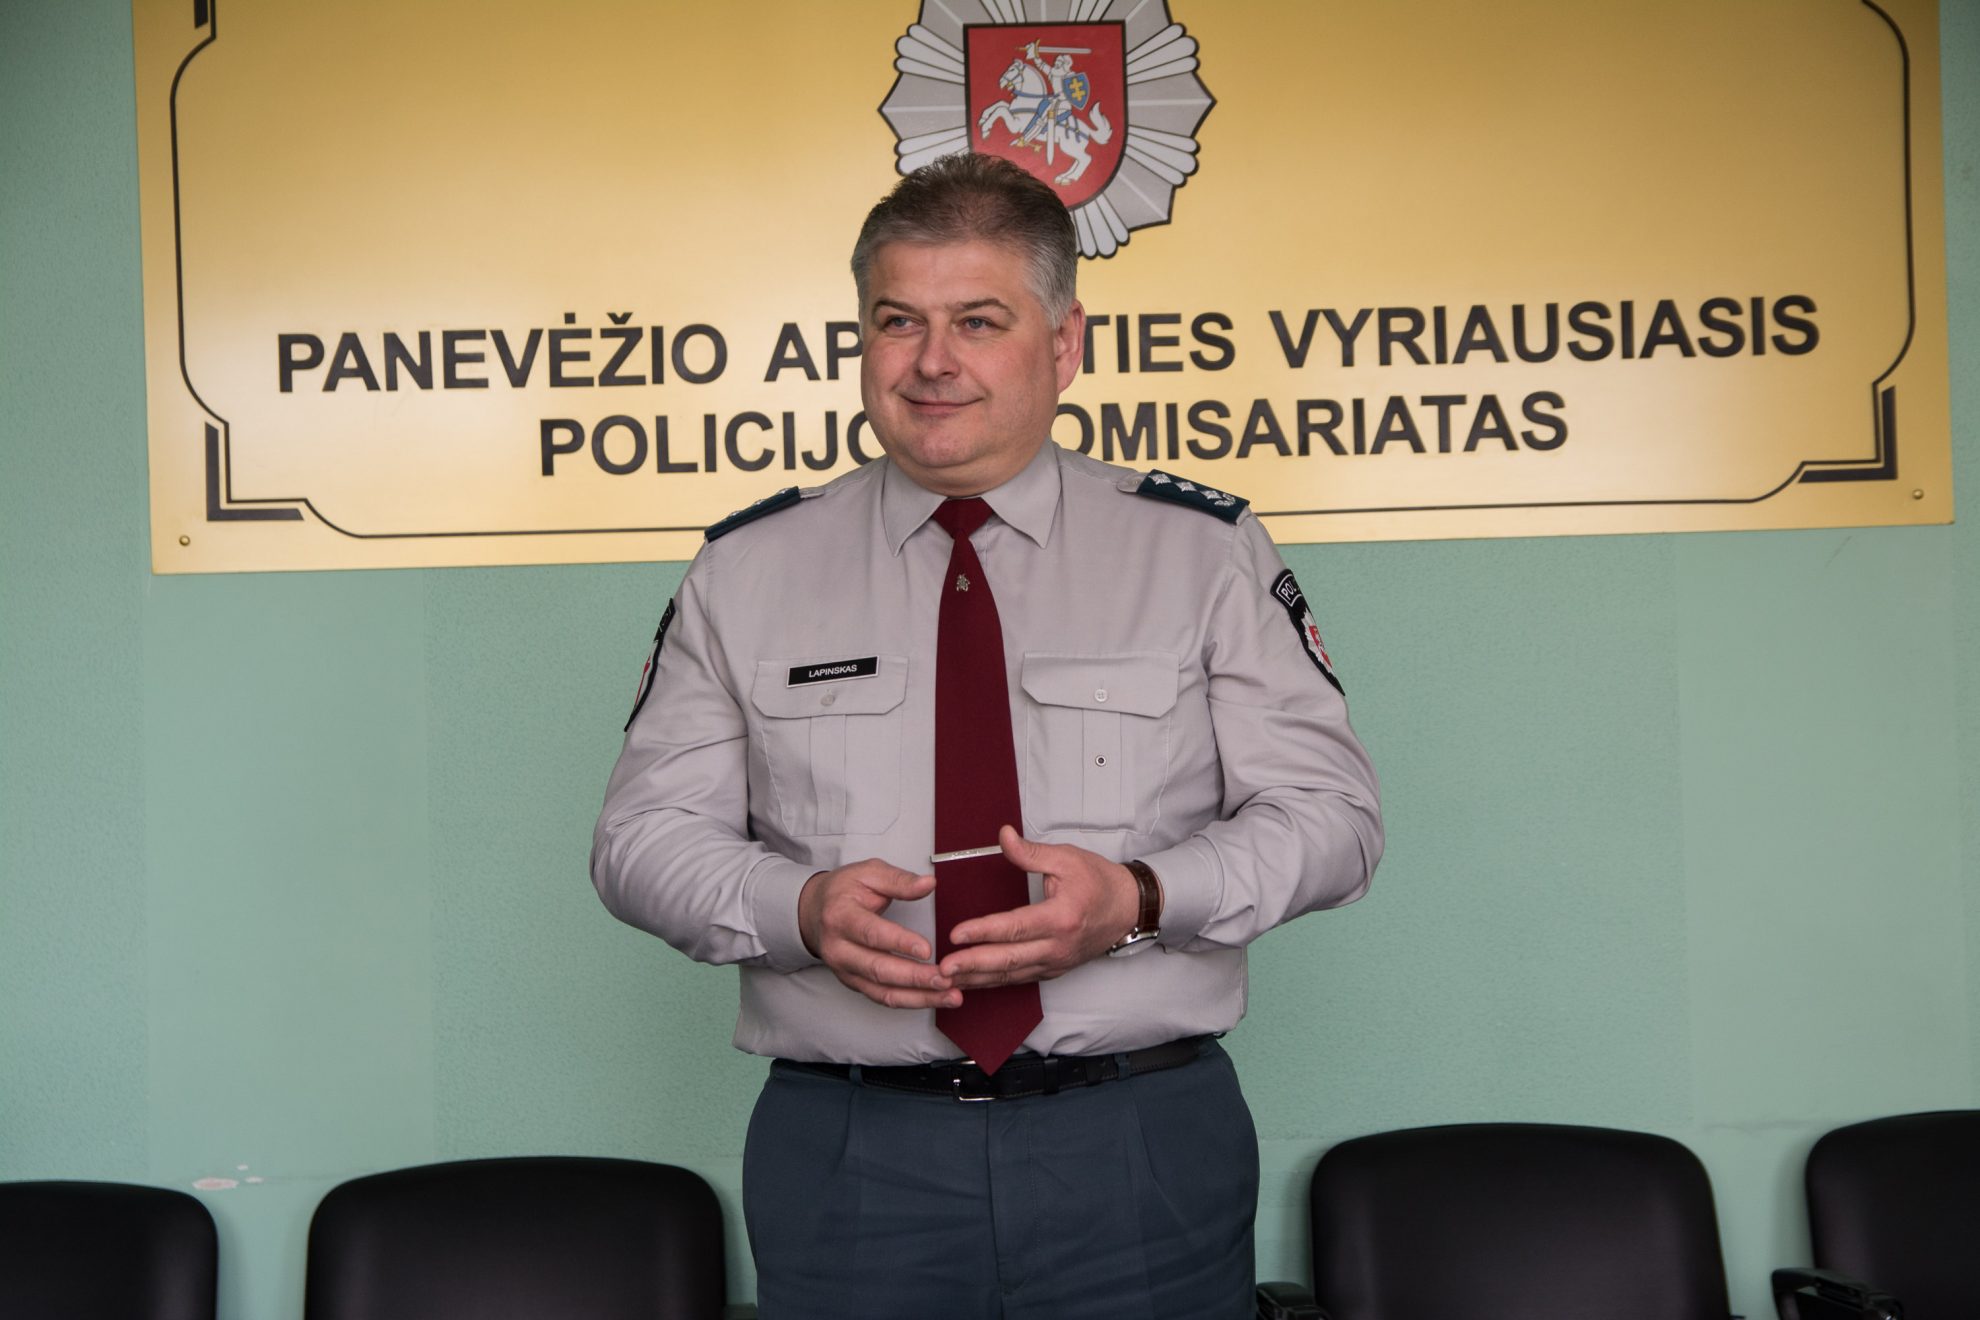 Vyriausybės atstovu Panevėžio ir Utenos apskrityse siūlomas buvęs Panevėžio apskrities policijos viršininkas Egidijus Lapinskas.